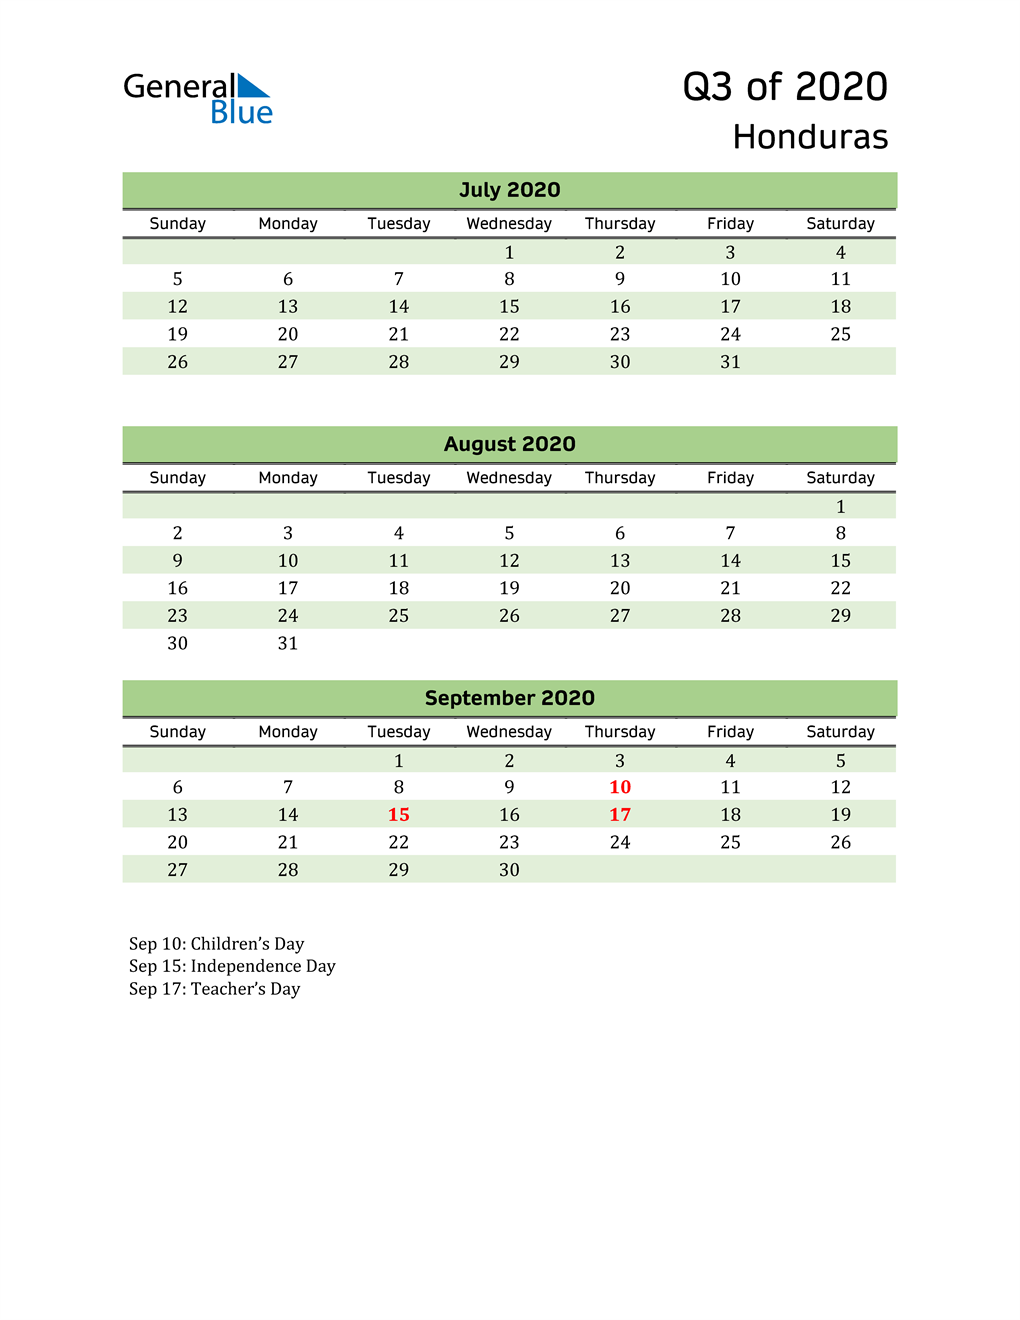  Quarterly Calendar 2020 with Honduras Holidays 